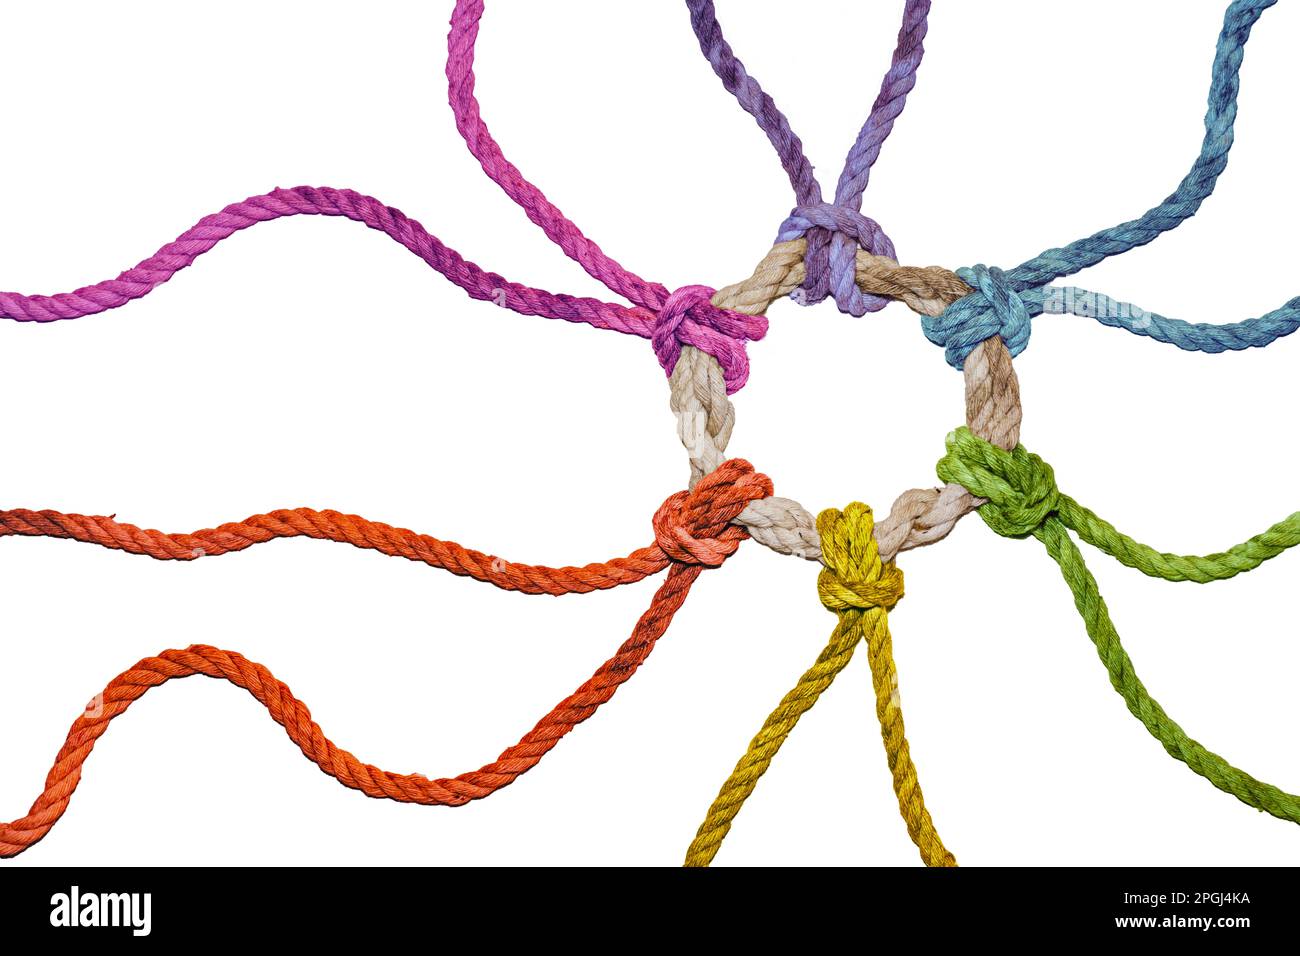 Des cordes rustiques de couleurs arc-en-ciel de différentes directions se rejoignent dans un anneau noué, symbole de diversité, de solidarité et de cohésion, isolé sur un Banque D'Images